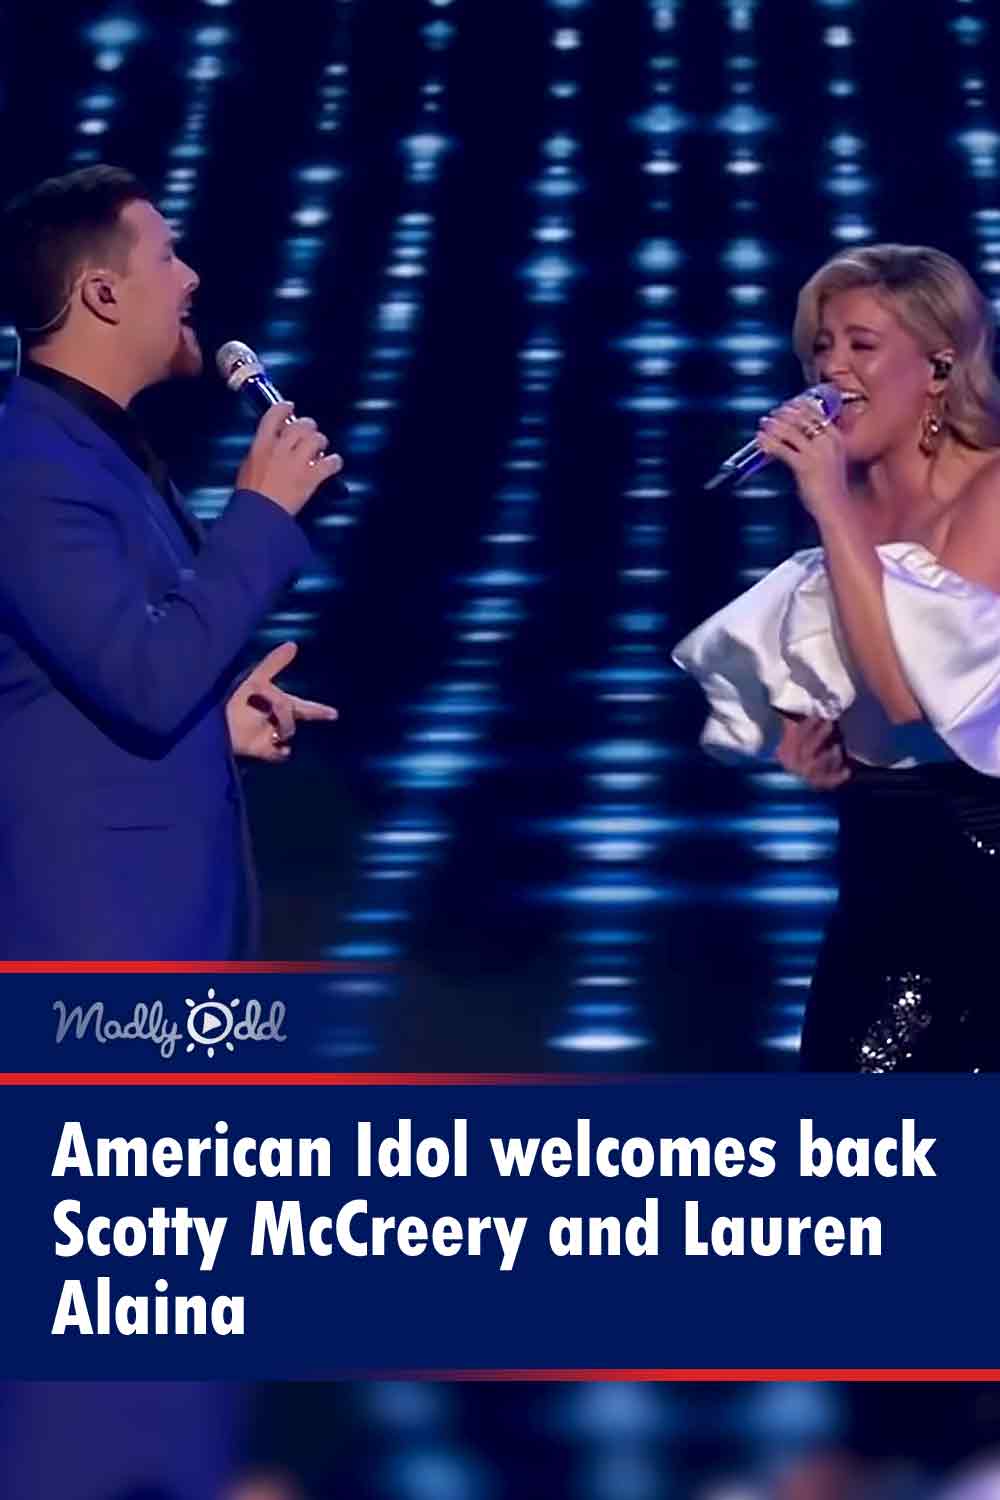 American Idol welcomes back Scotty McCreery and Lauren Alaina